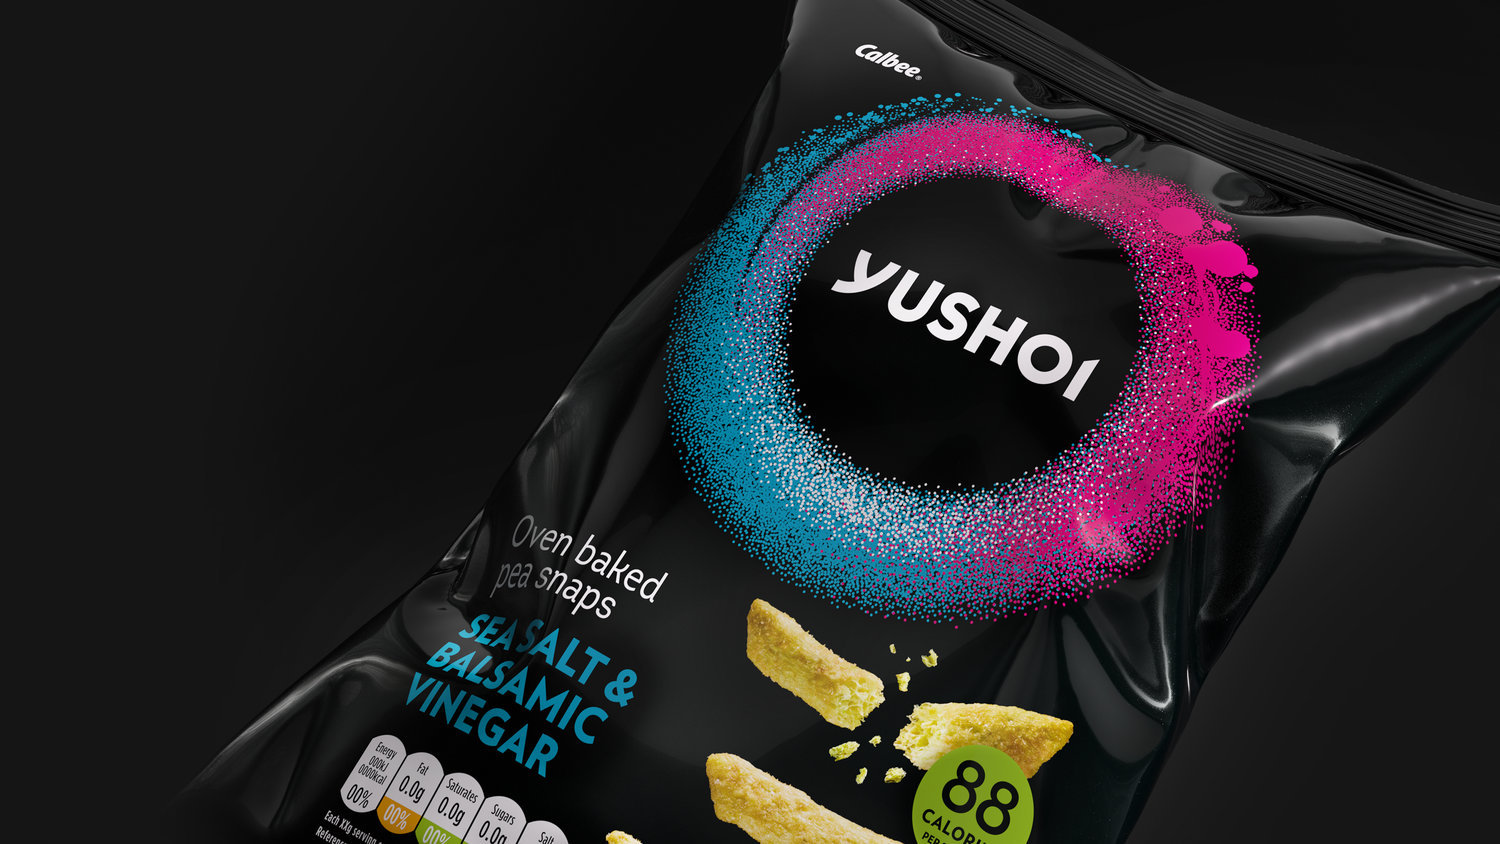 Elmwood Redesign Yushoi, the Japanese-inspired Snack Brand